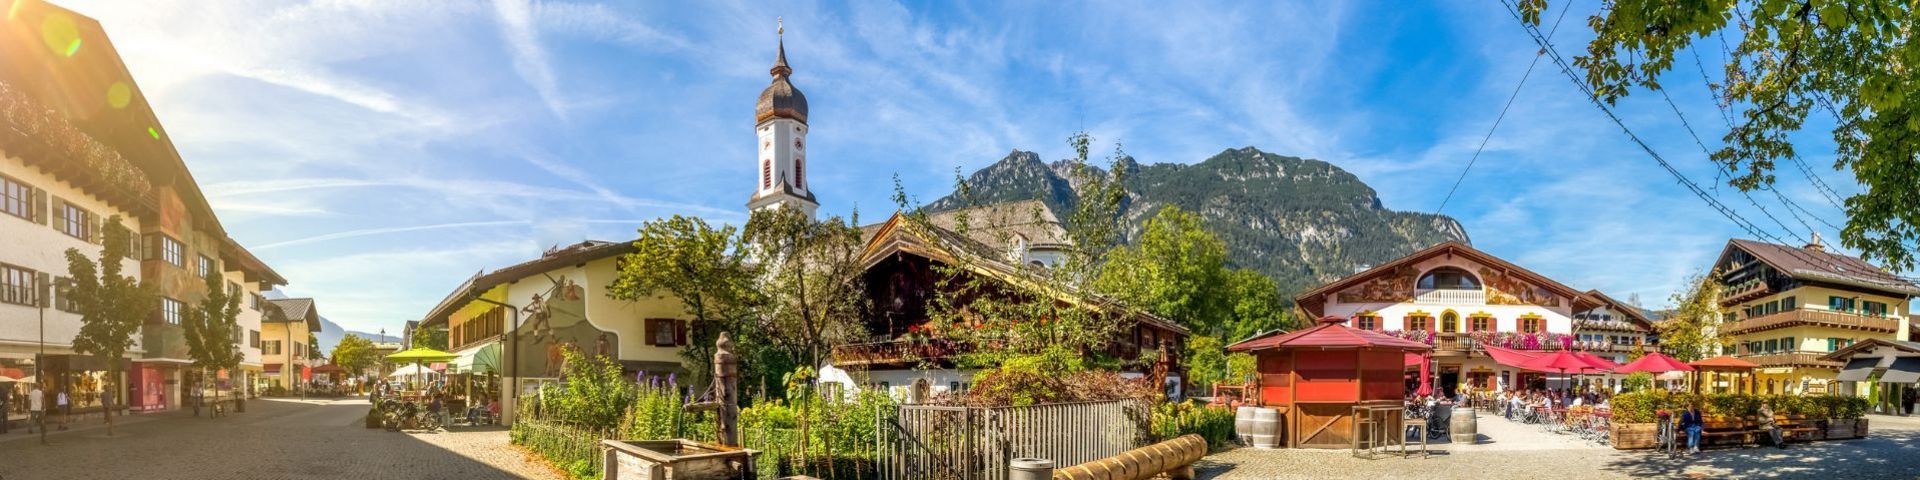 Garmisch-Partenkirchen auf einer Bayern Reise mit sz-Reisen